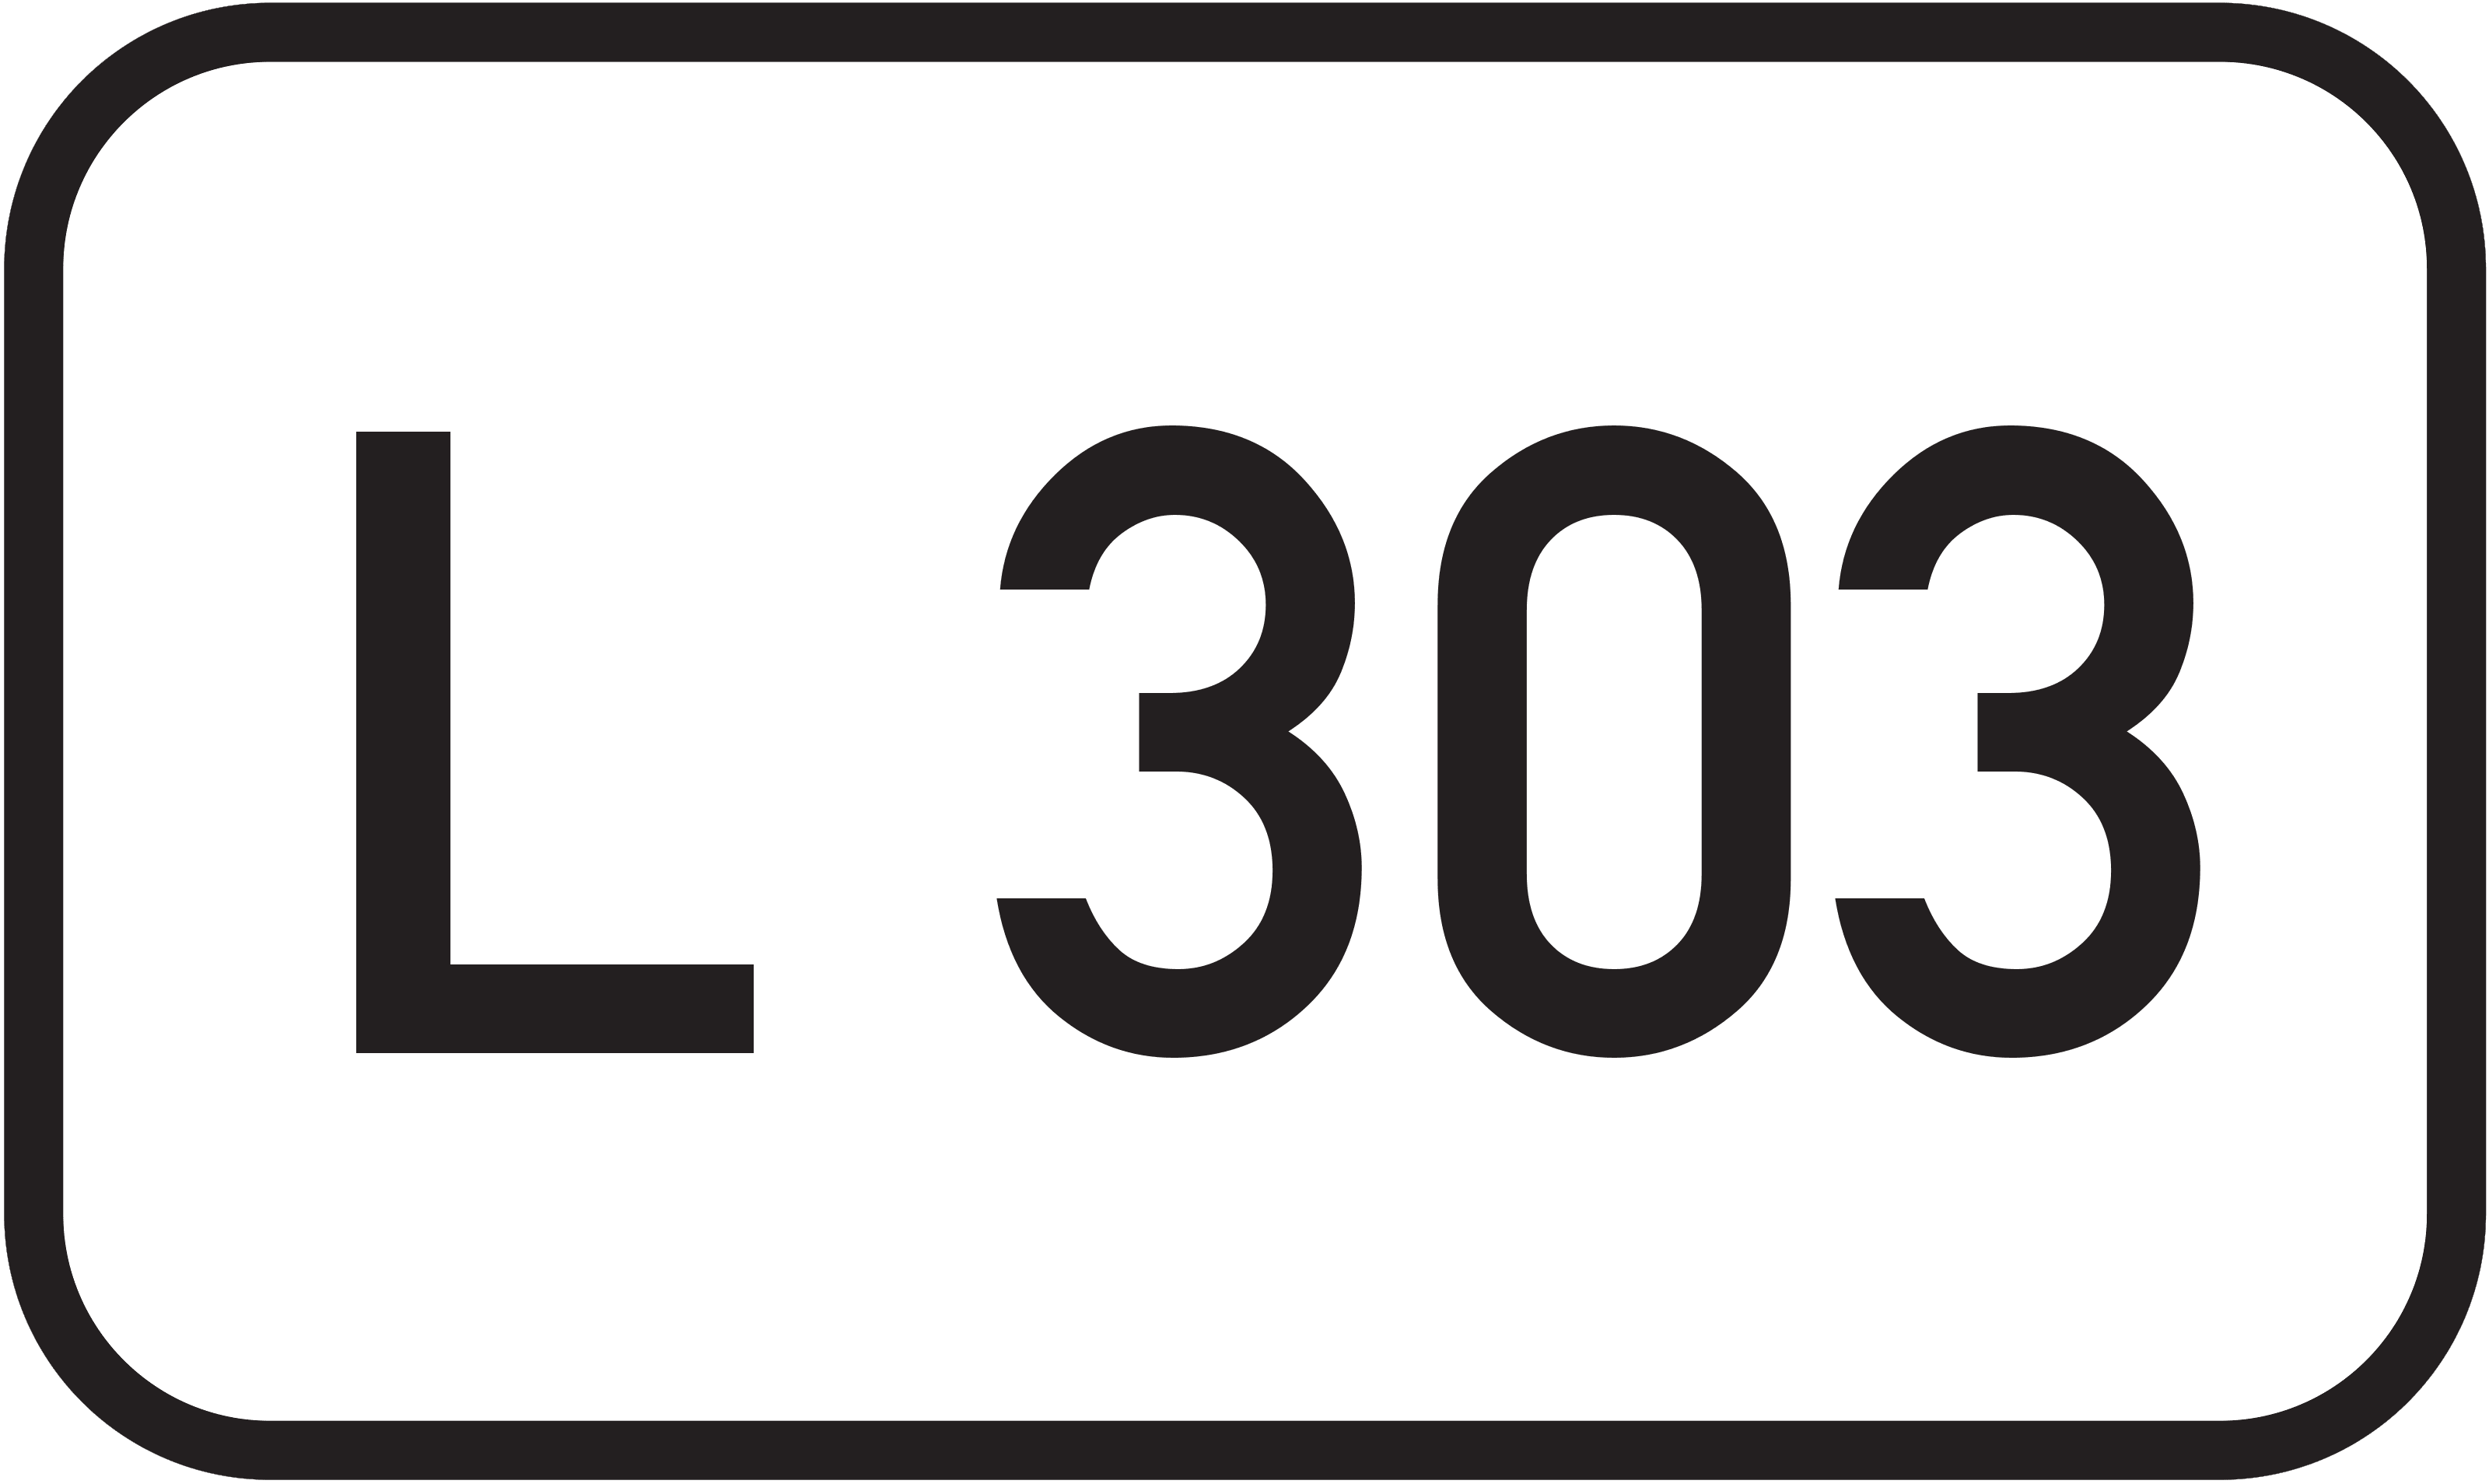 Landesstraße L 303